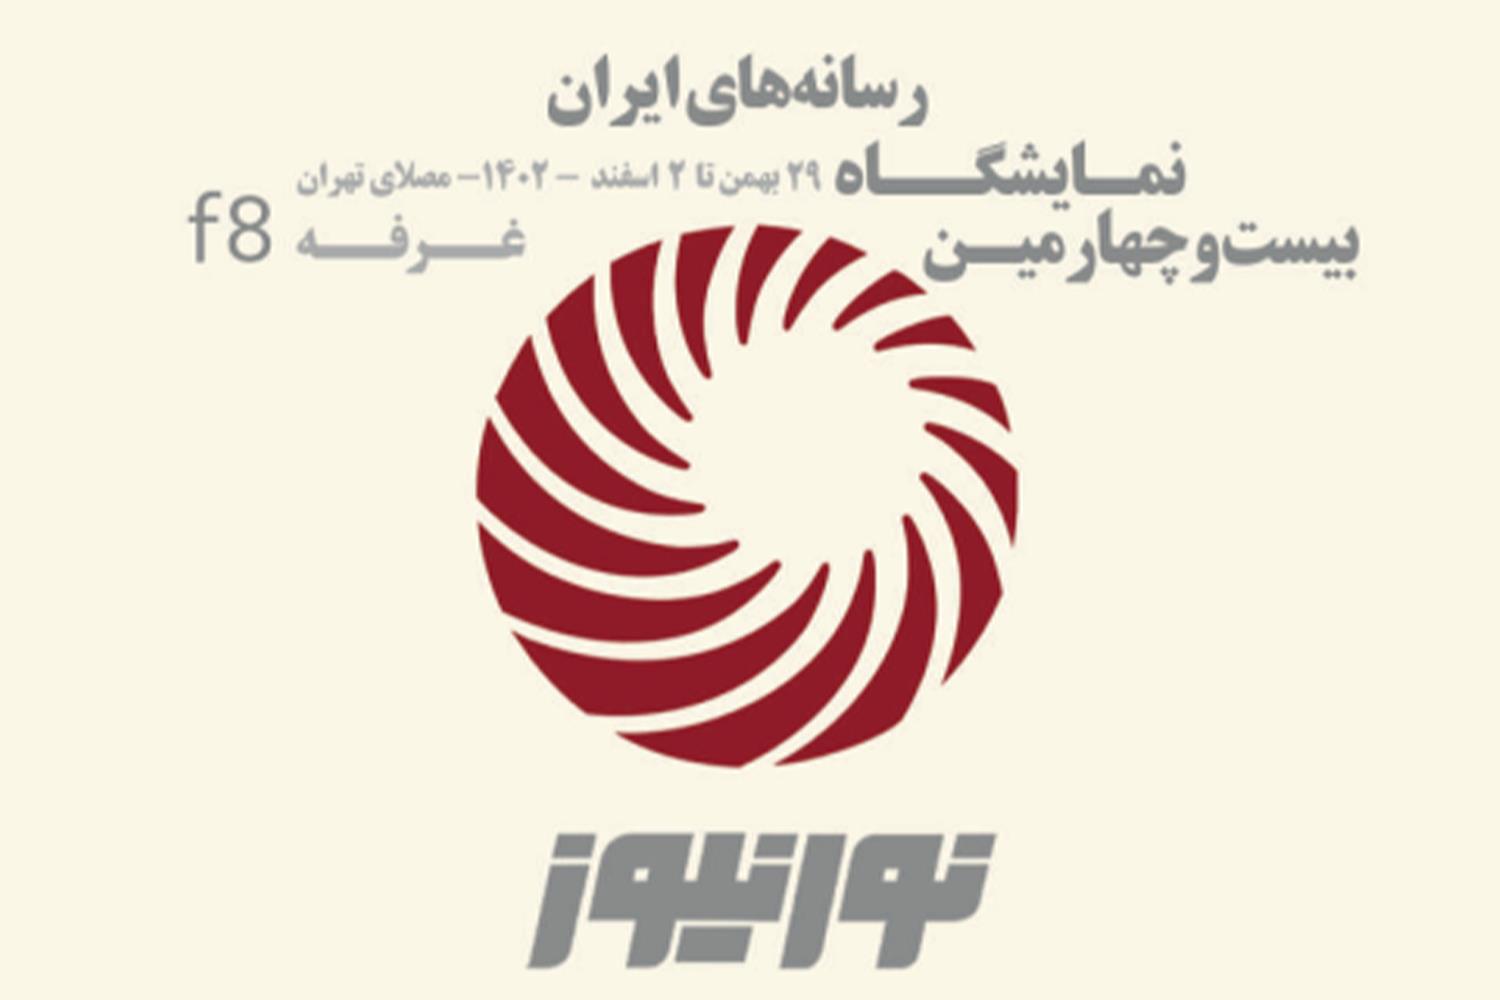 همزمان با برگزاری بیست و چهارمین نمایشگاه رسانه های ایران از تارنمای جدید "نورنیوز رونمایی شد